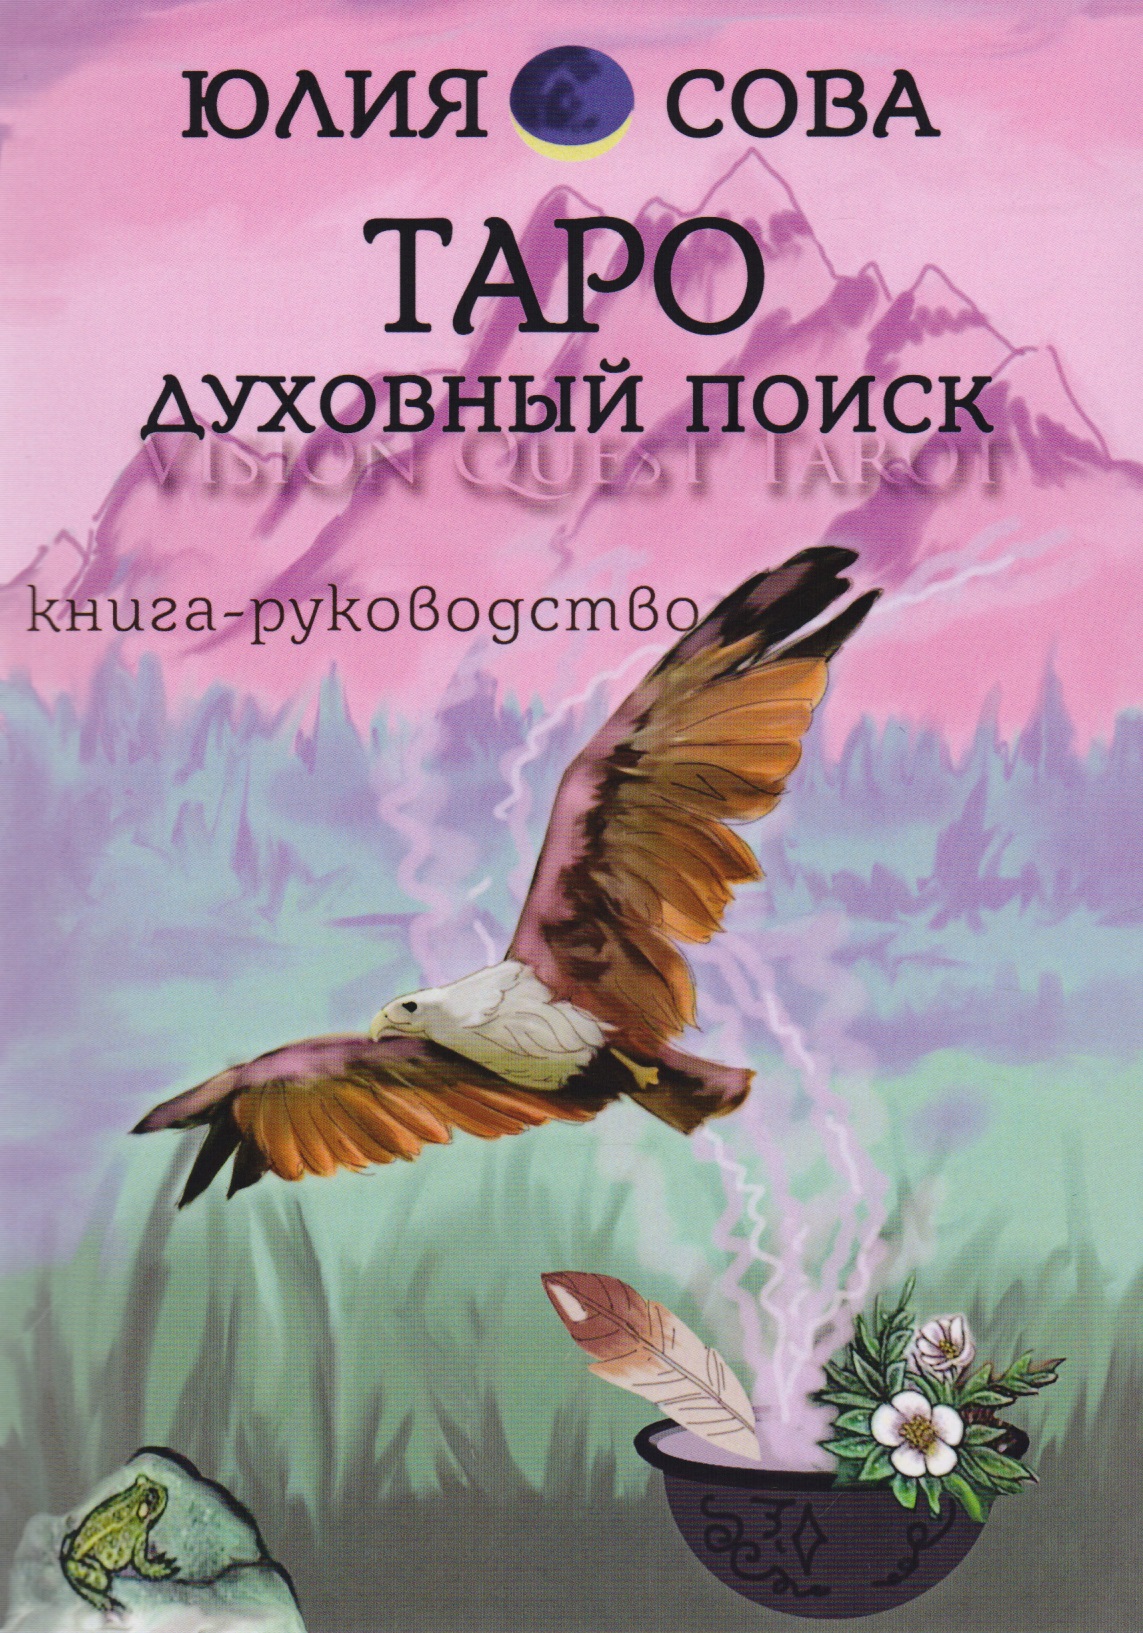 Белова Юлия Валерьевна - Книга Vision Quest Tarot Таро духовный поиск Книга руководство (м) Сова